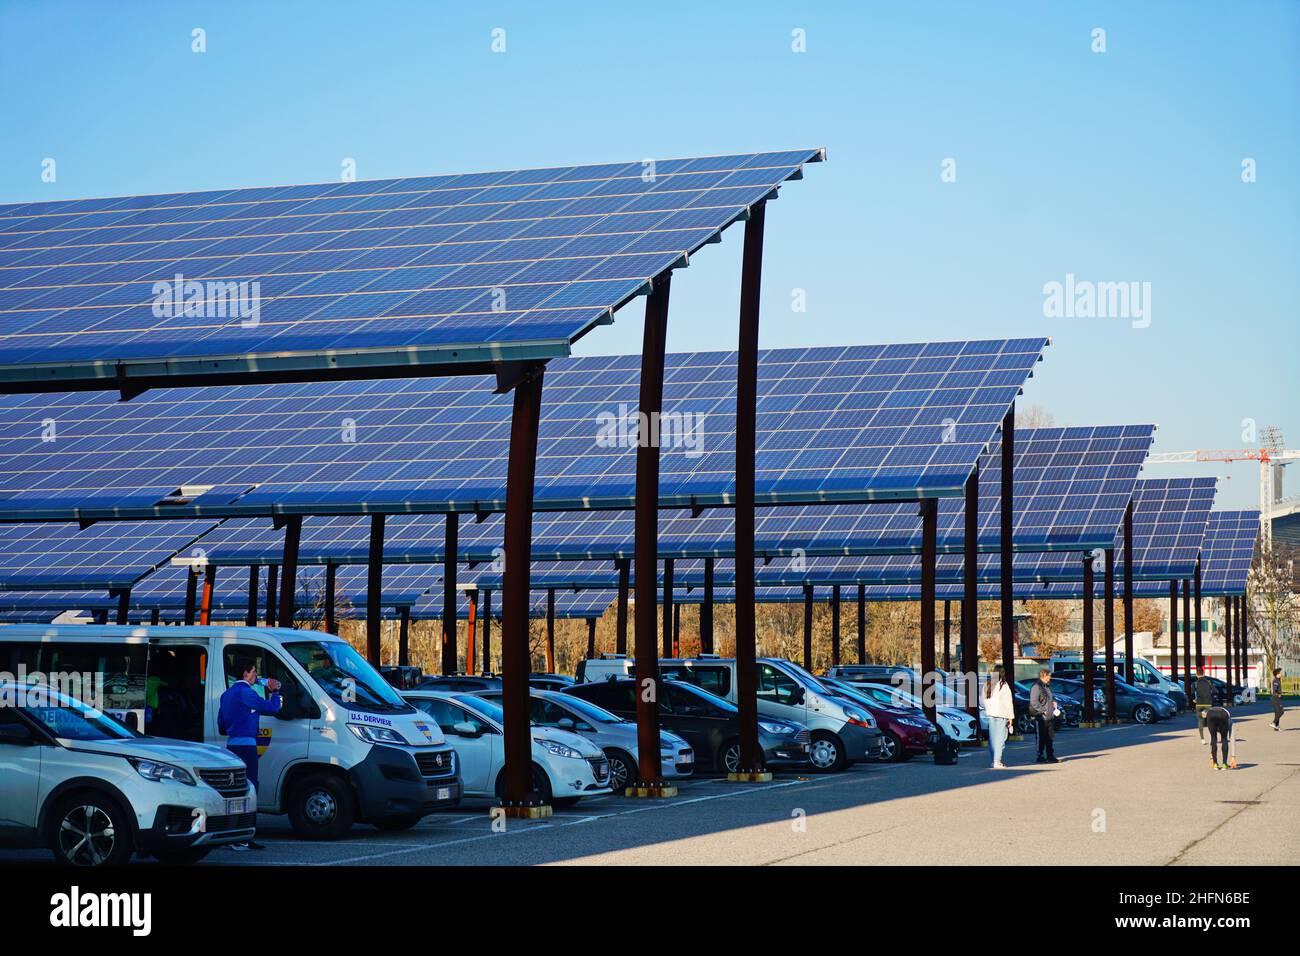 Sonnenkollektoren auf einem Parkplatz. Unternehmen installieren erneuerbare Energiequellen, um ihre CO2-Bilanz zu reduzieren. Padua, Italien - Januar 2022 Stockfoto